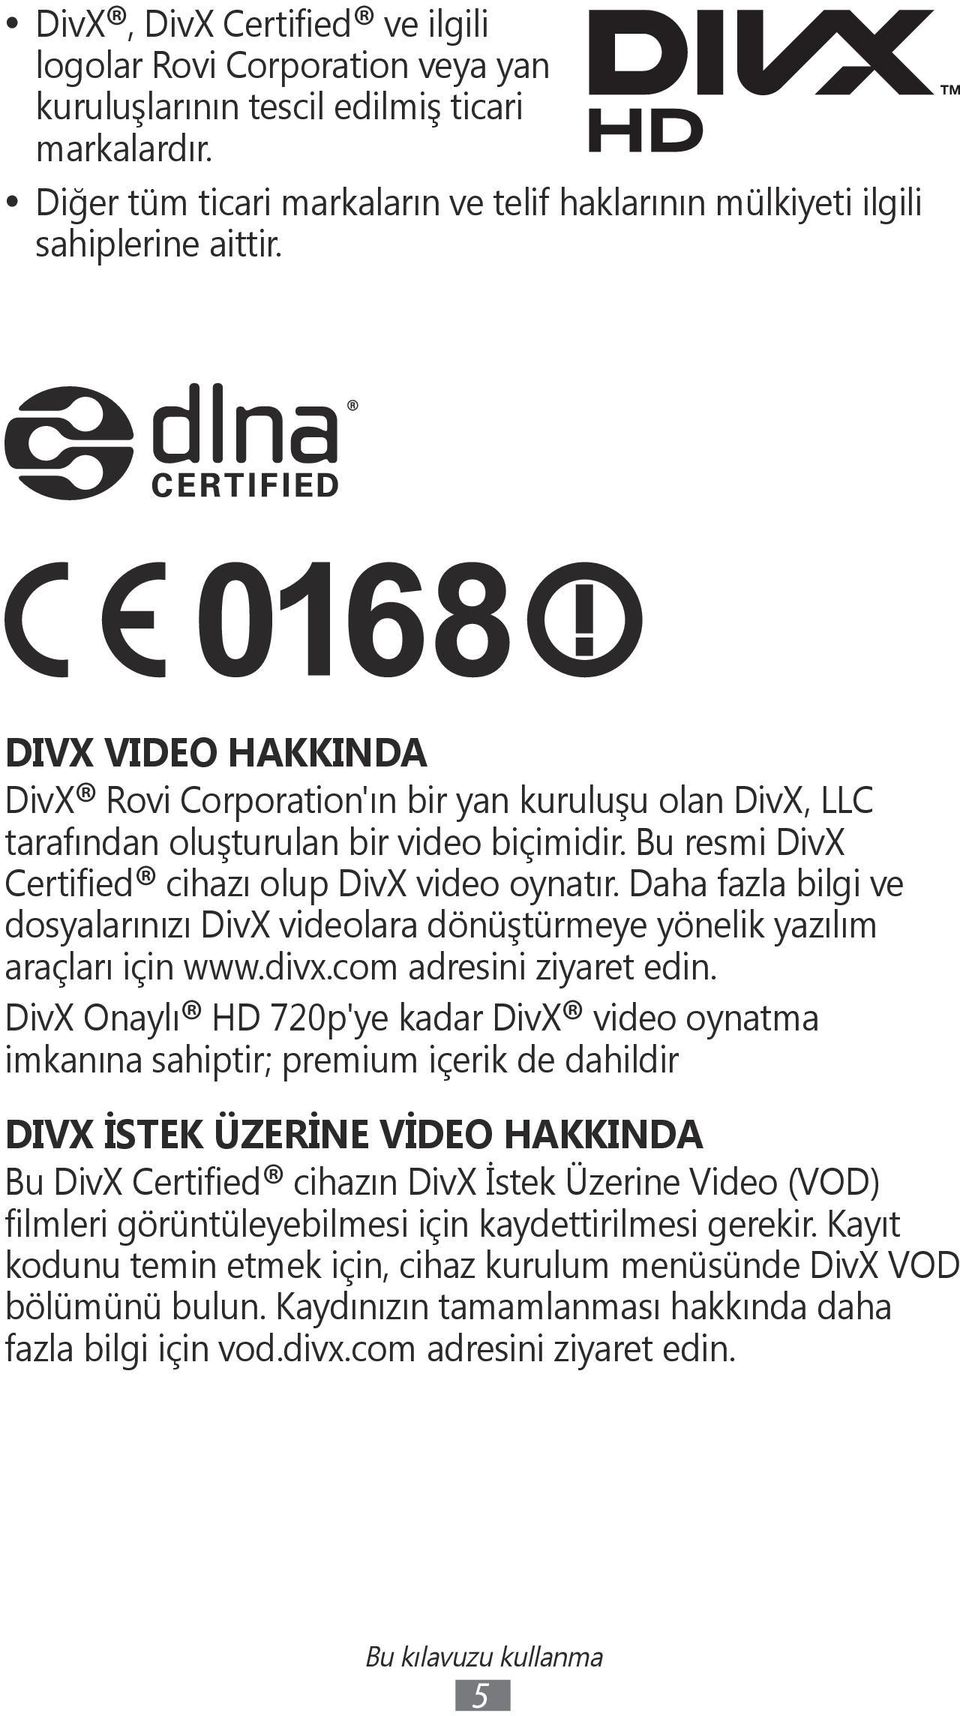 Daha fazla bilgi ve dosyalarınızı DivX videolara dönüştürmeye yönelik yazılım araçları için www.divx.com adresini ziyaret edin.